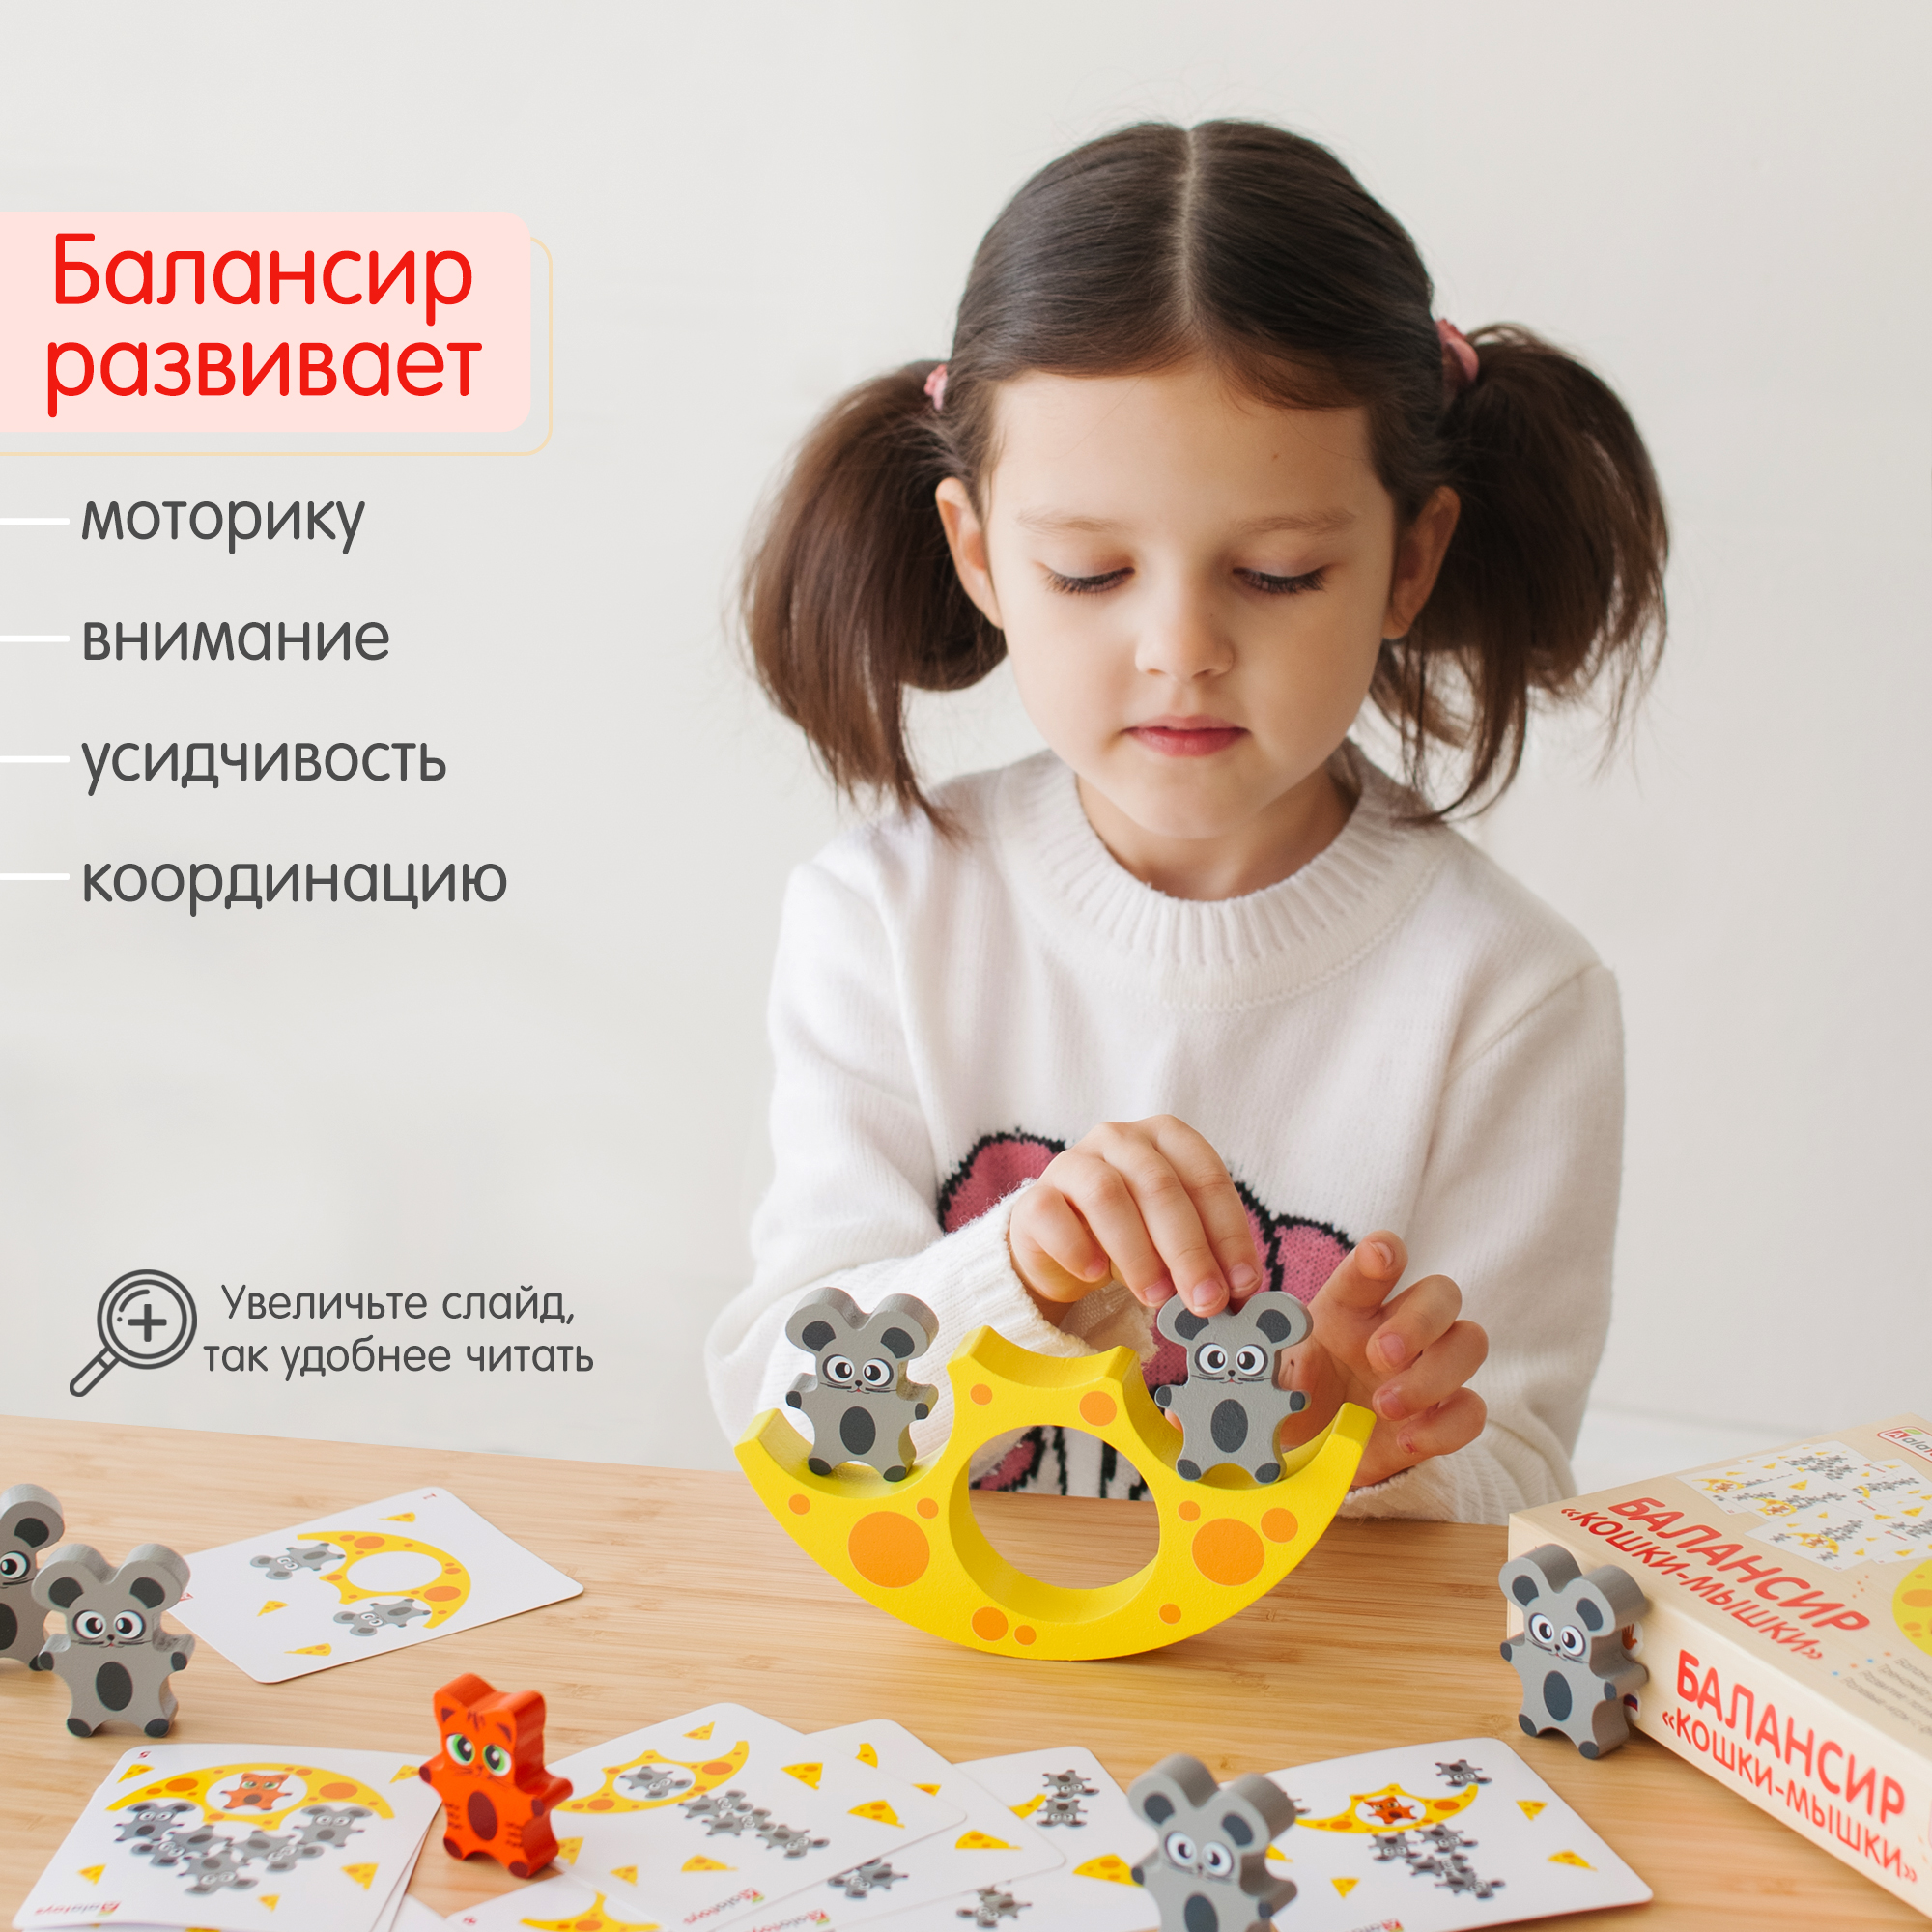 Балансир Кошки-Мышки Алатойс 8 фигурок деревянная развивающая игра - фото 2